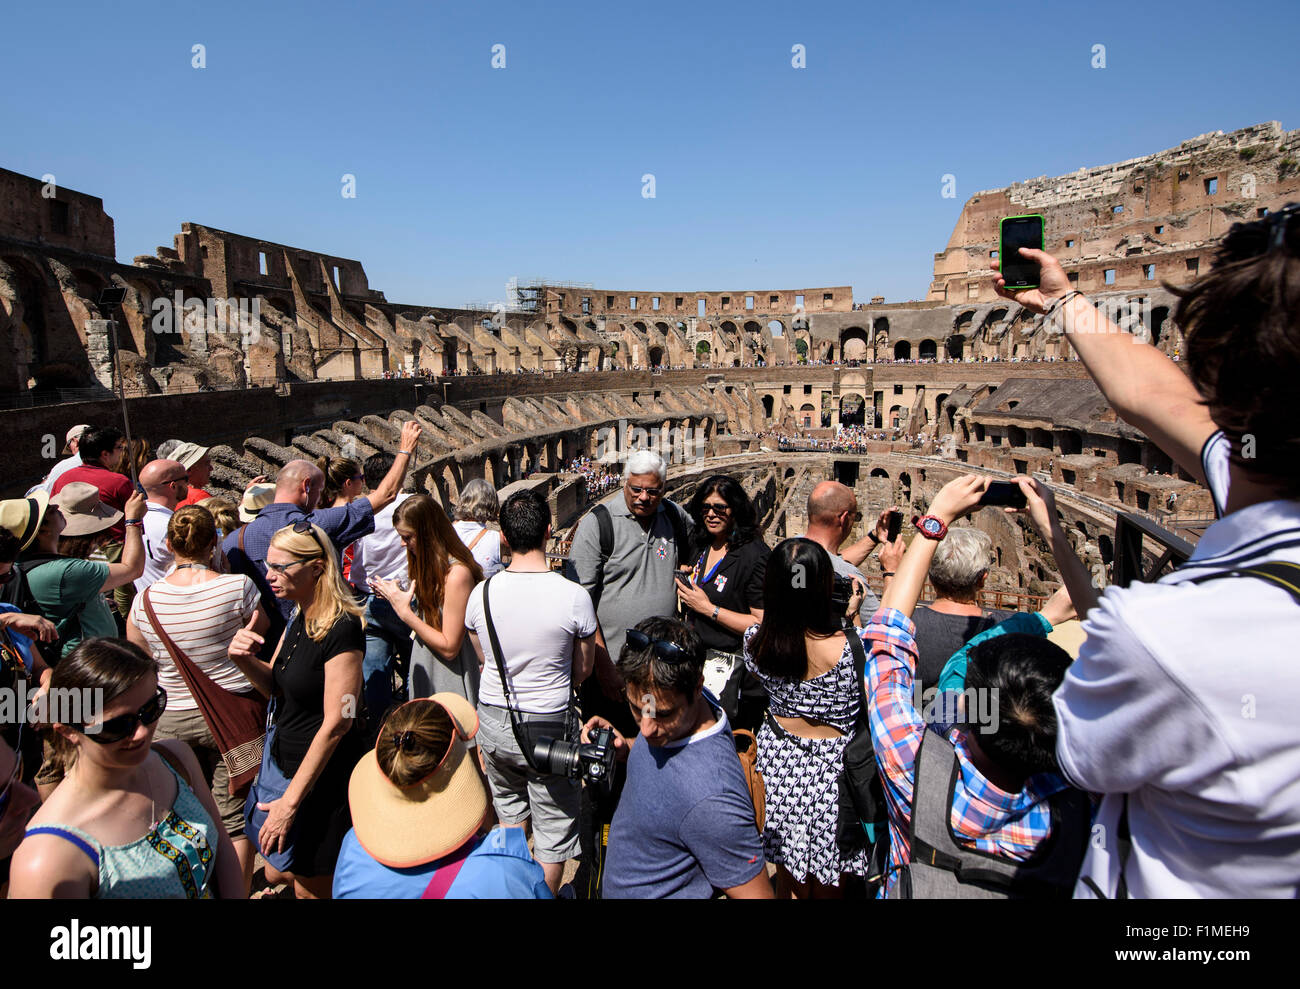 Roma. L'Italia. La folla di turisti all'interno del Colosseo romano. Foto Stock